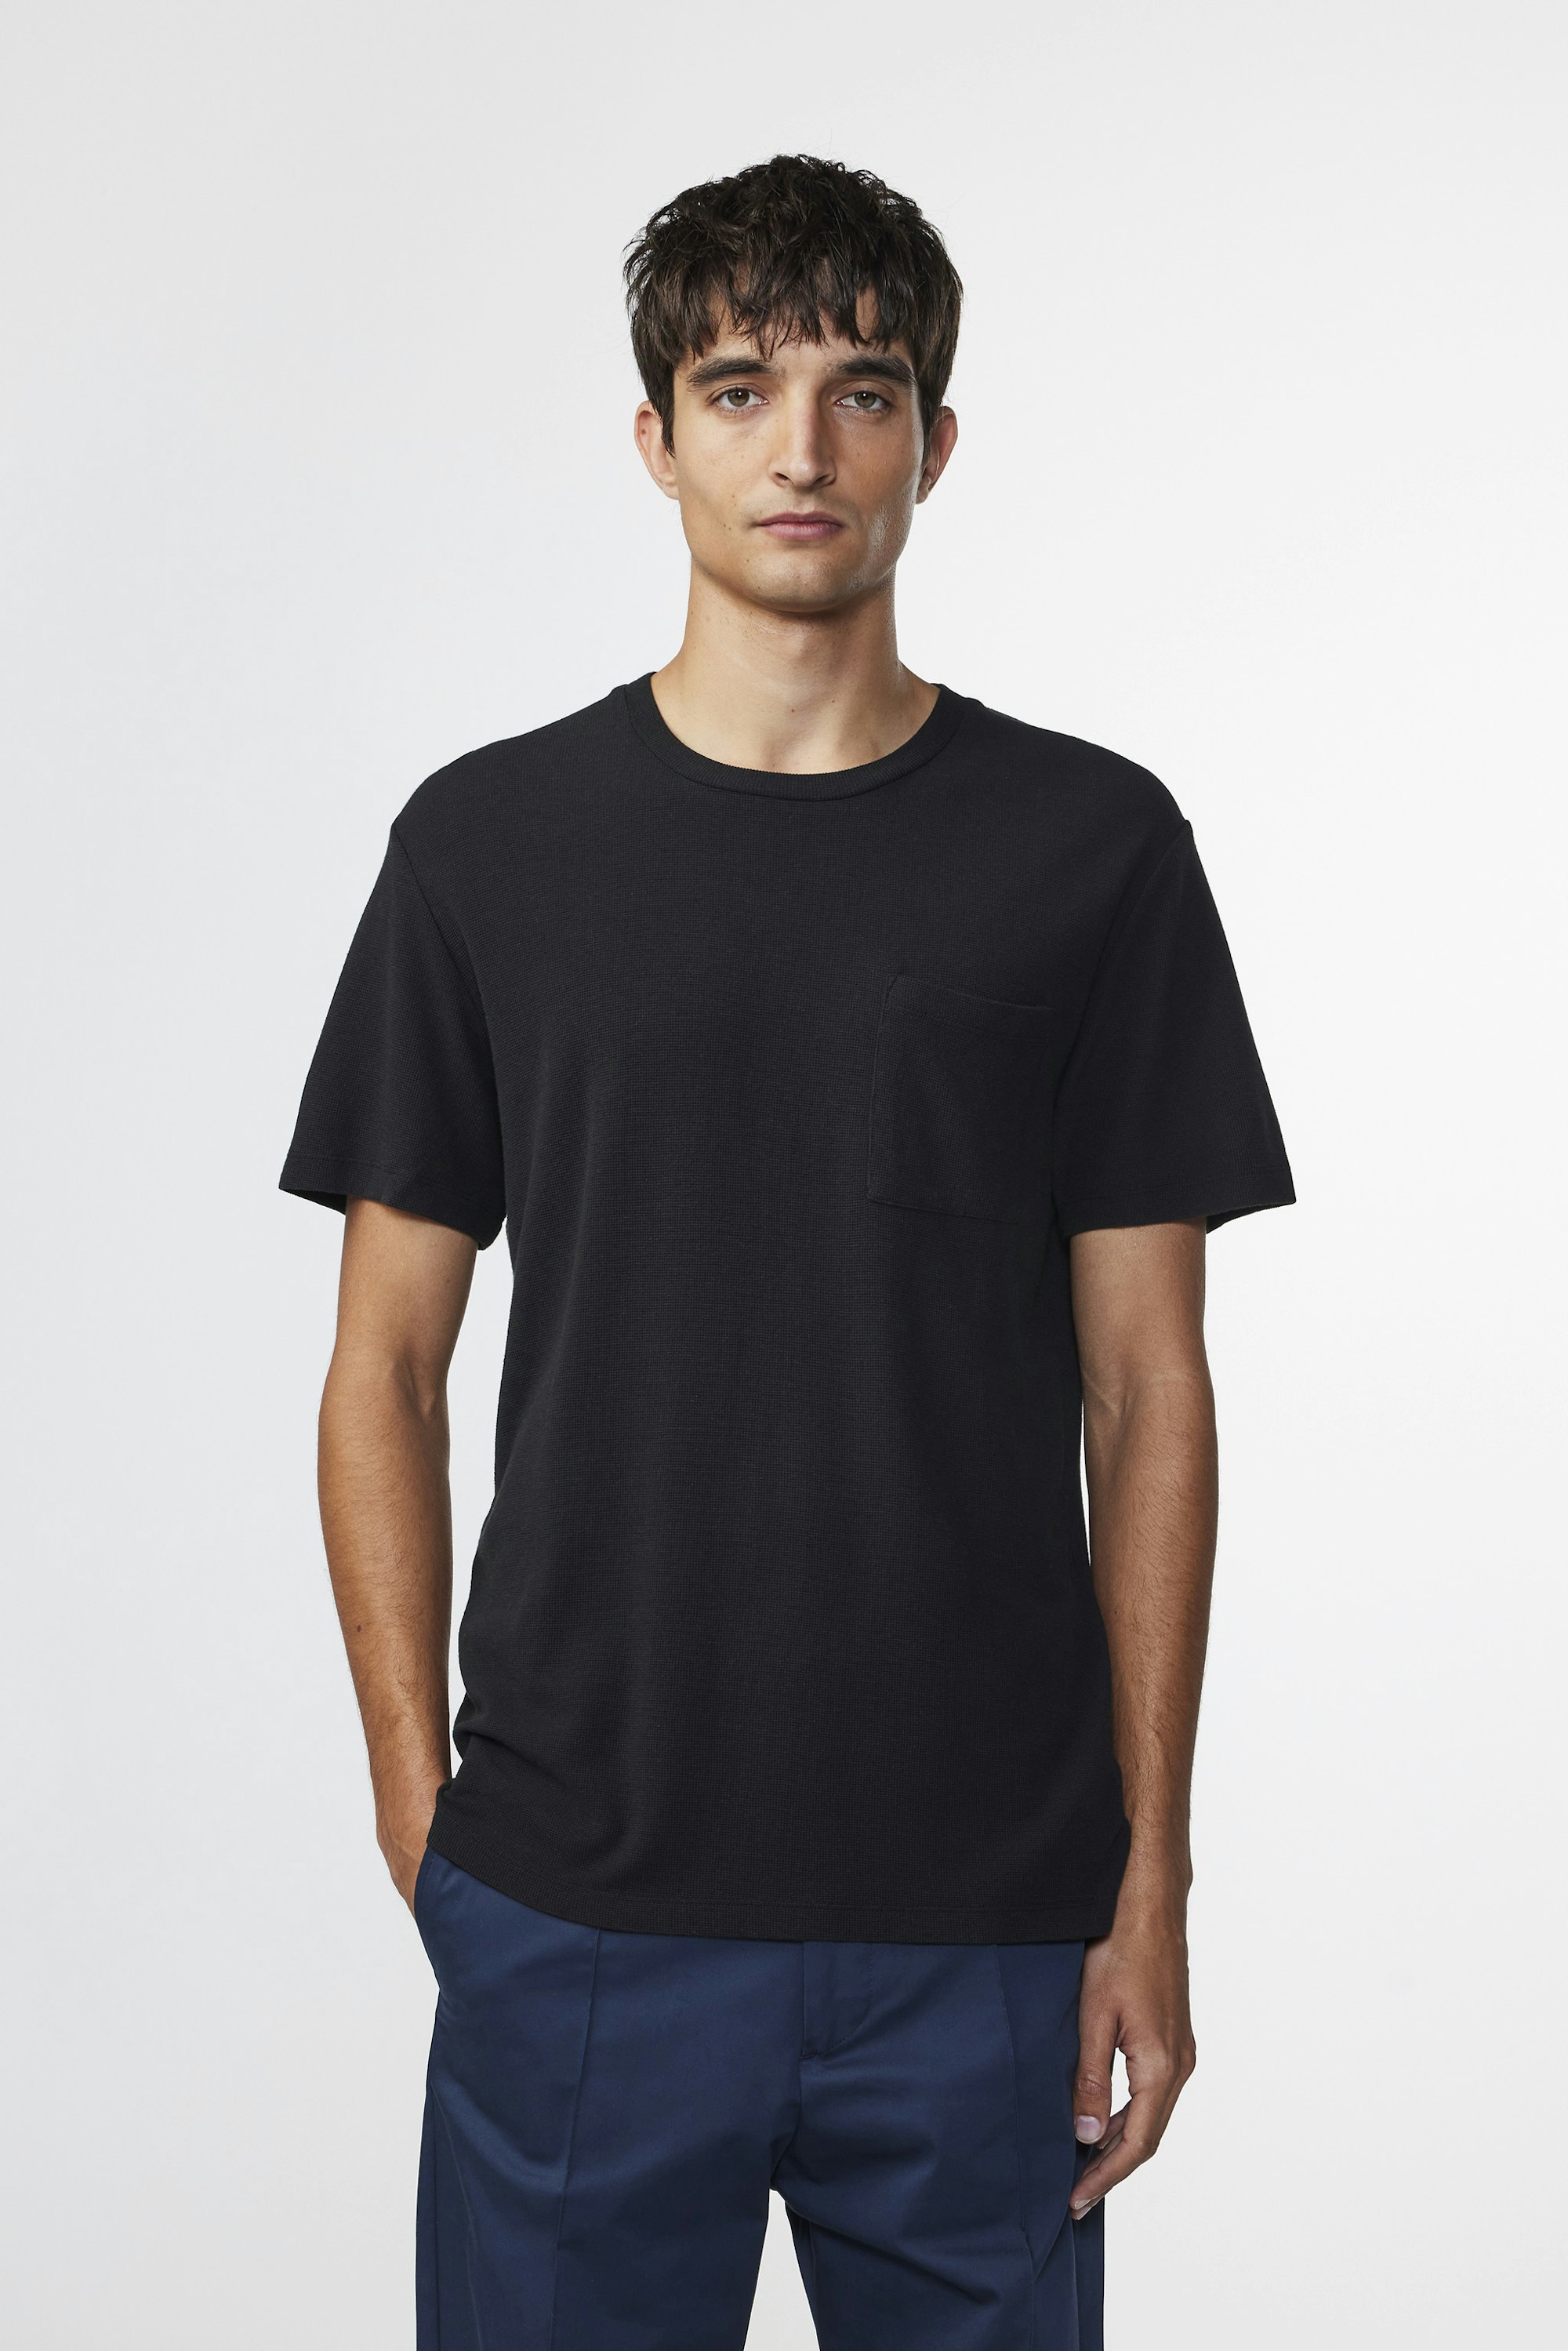 Clive 3323 men's t-shirt - Black - Buy online at